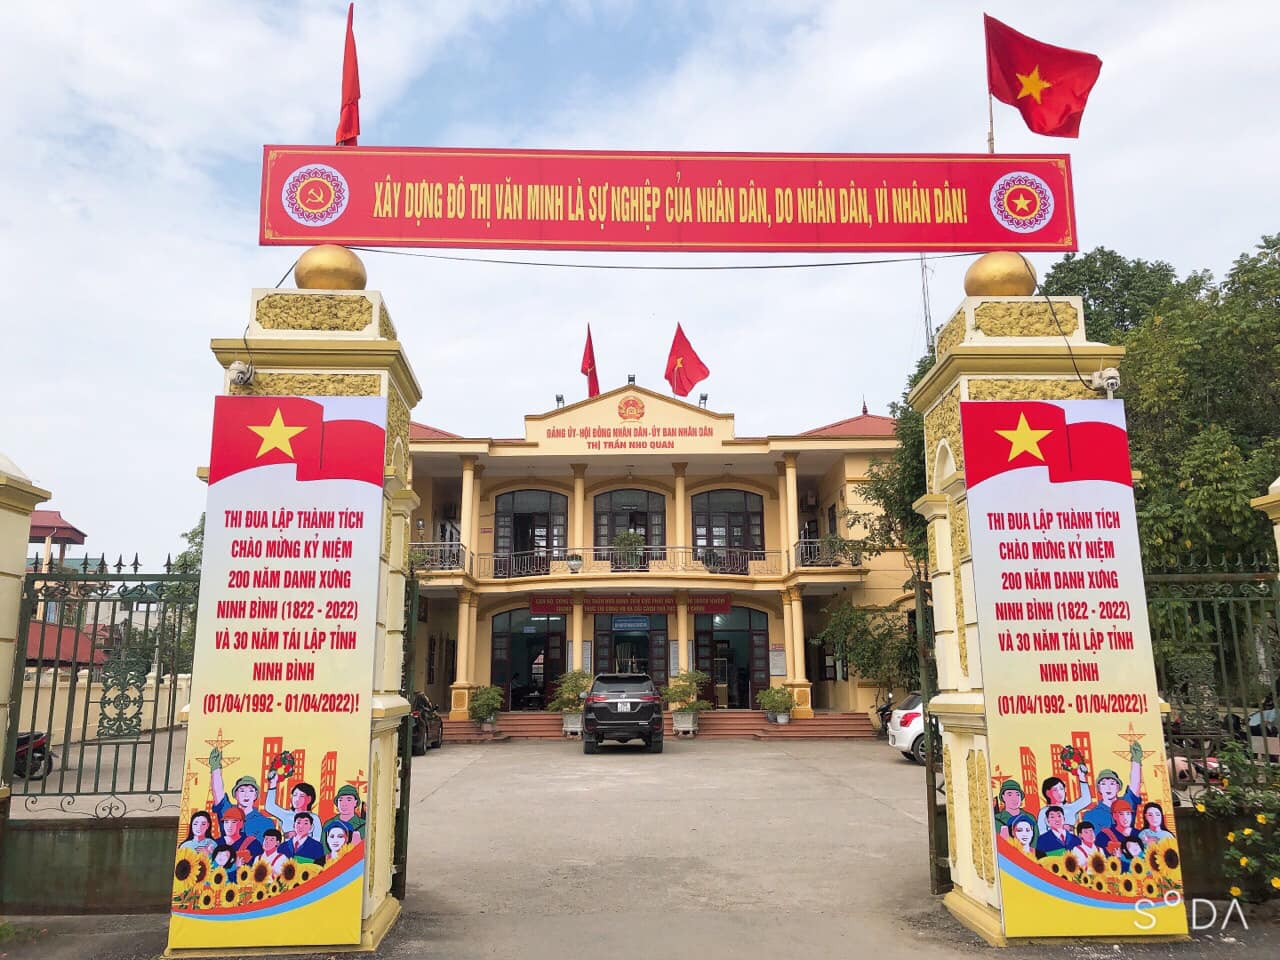 Nhiệt liệt chào mừng Kỷ niệm  200 năm danh xưng Ninh Bình (1822-2022) và 30 năm Tái lập tỉnh Ninh Bình ( 01/4/1992 - 01/4/2022).